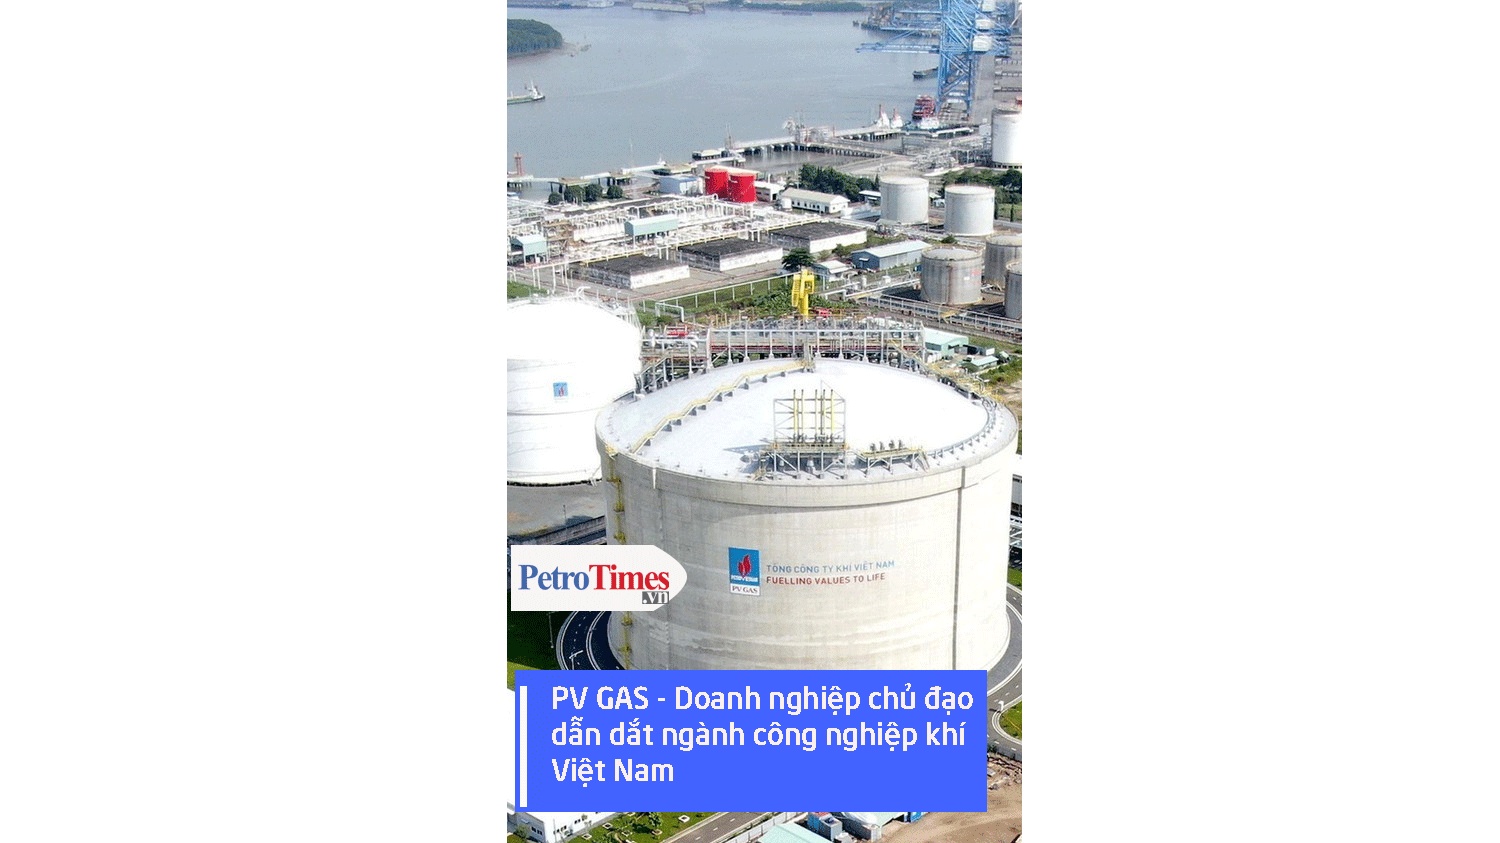 [VIDEO] PV GAS – Doanh nghiệp chủ đạo, dẫn dắt ngành công nghiệp khí Việt Nam